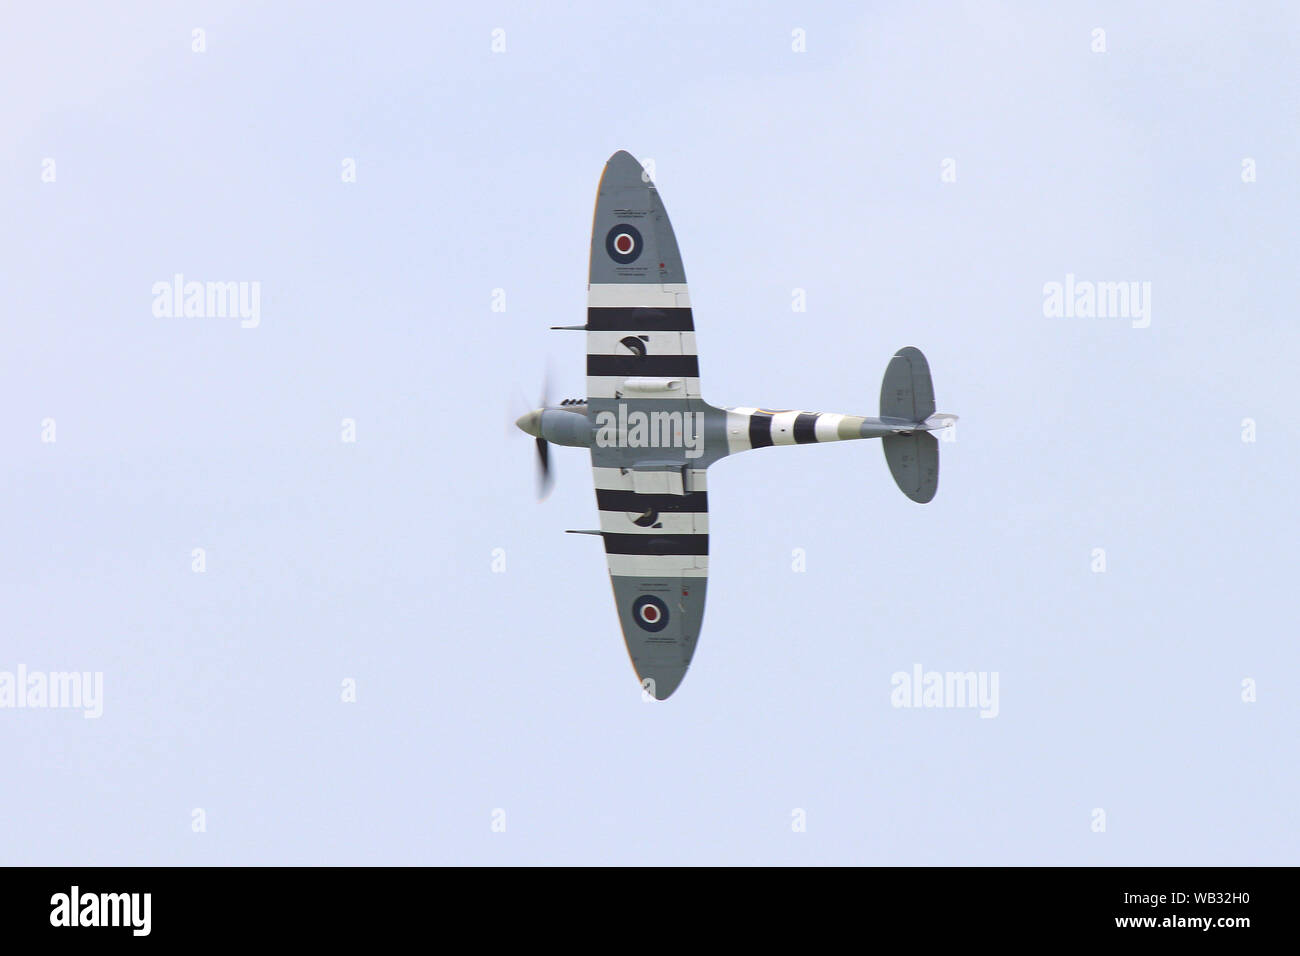 Eine Spitfire Pässe Overhead seine elliptische Flügel zeigen. Die Streifen waren auf alliierte Flugzeuge, um Sie von feindlichen Flugzeugen auf D zu unterscheiden - Tag setzen. Stockfoto